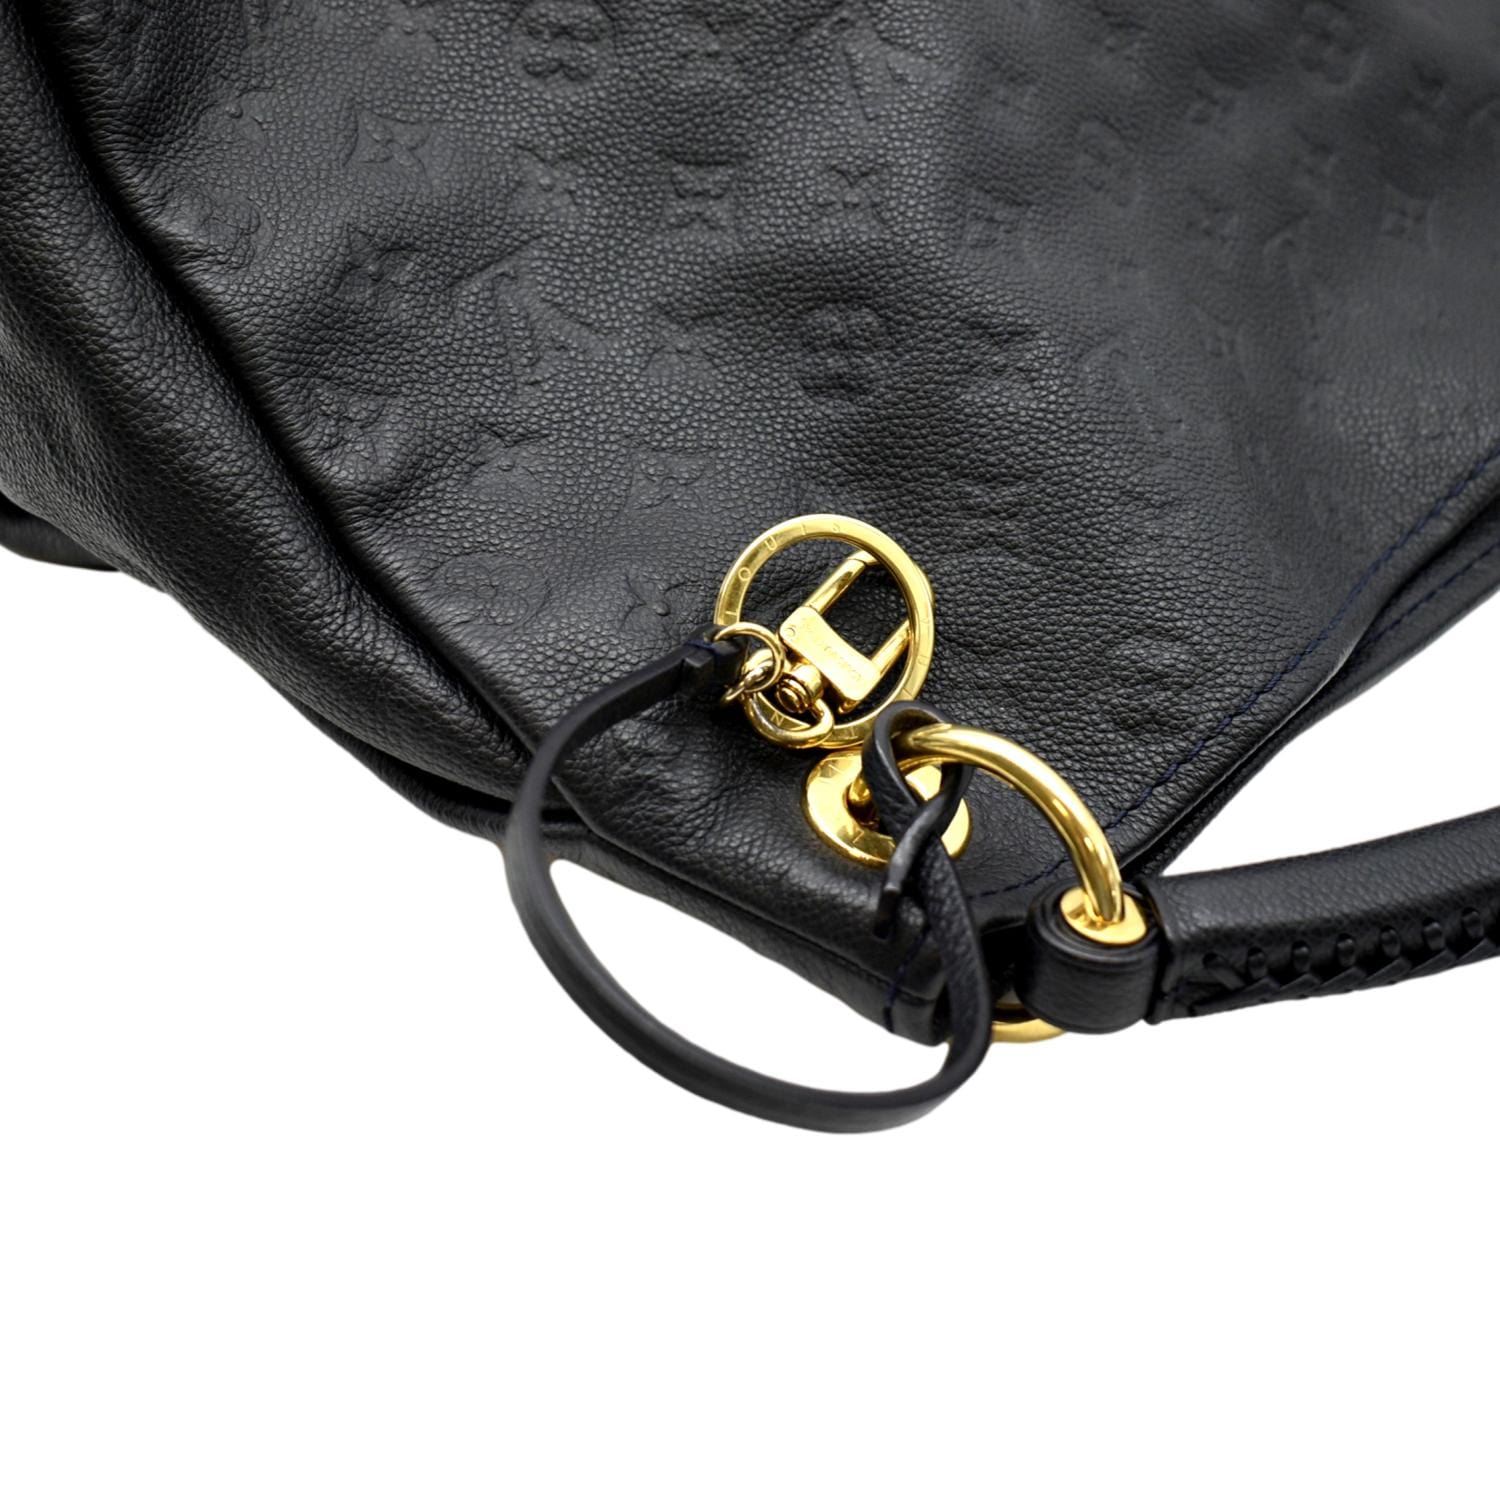 Louis Vuitton Dark Blue Monogram Empreinte Leather Artsy MM Bag